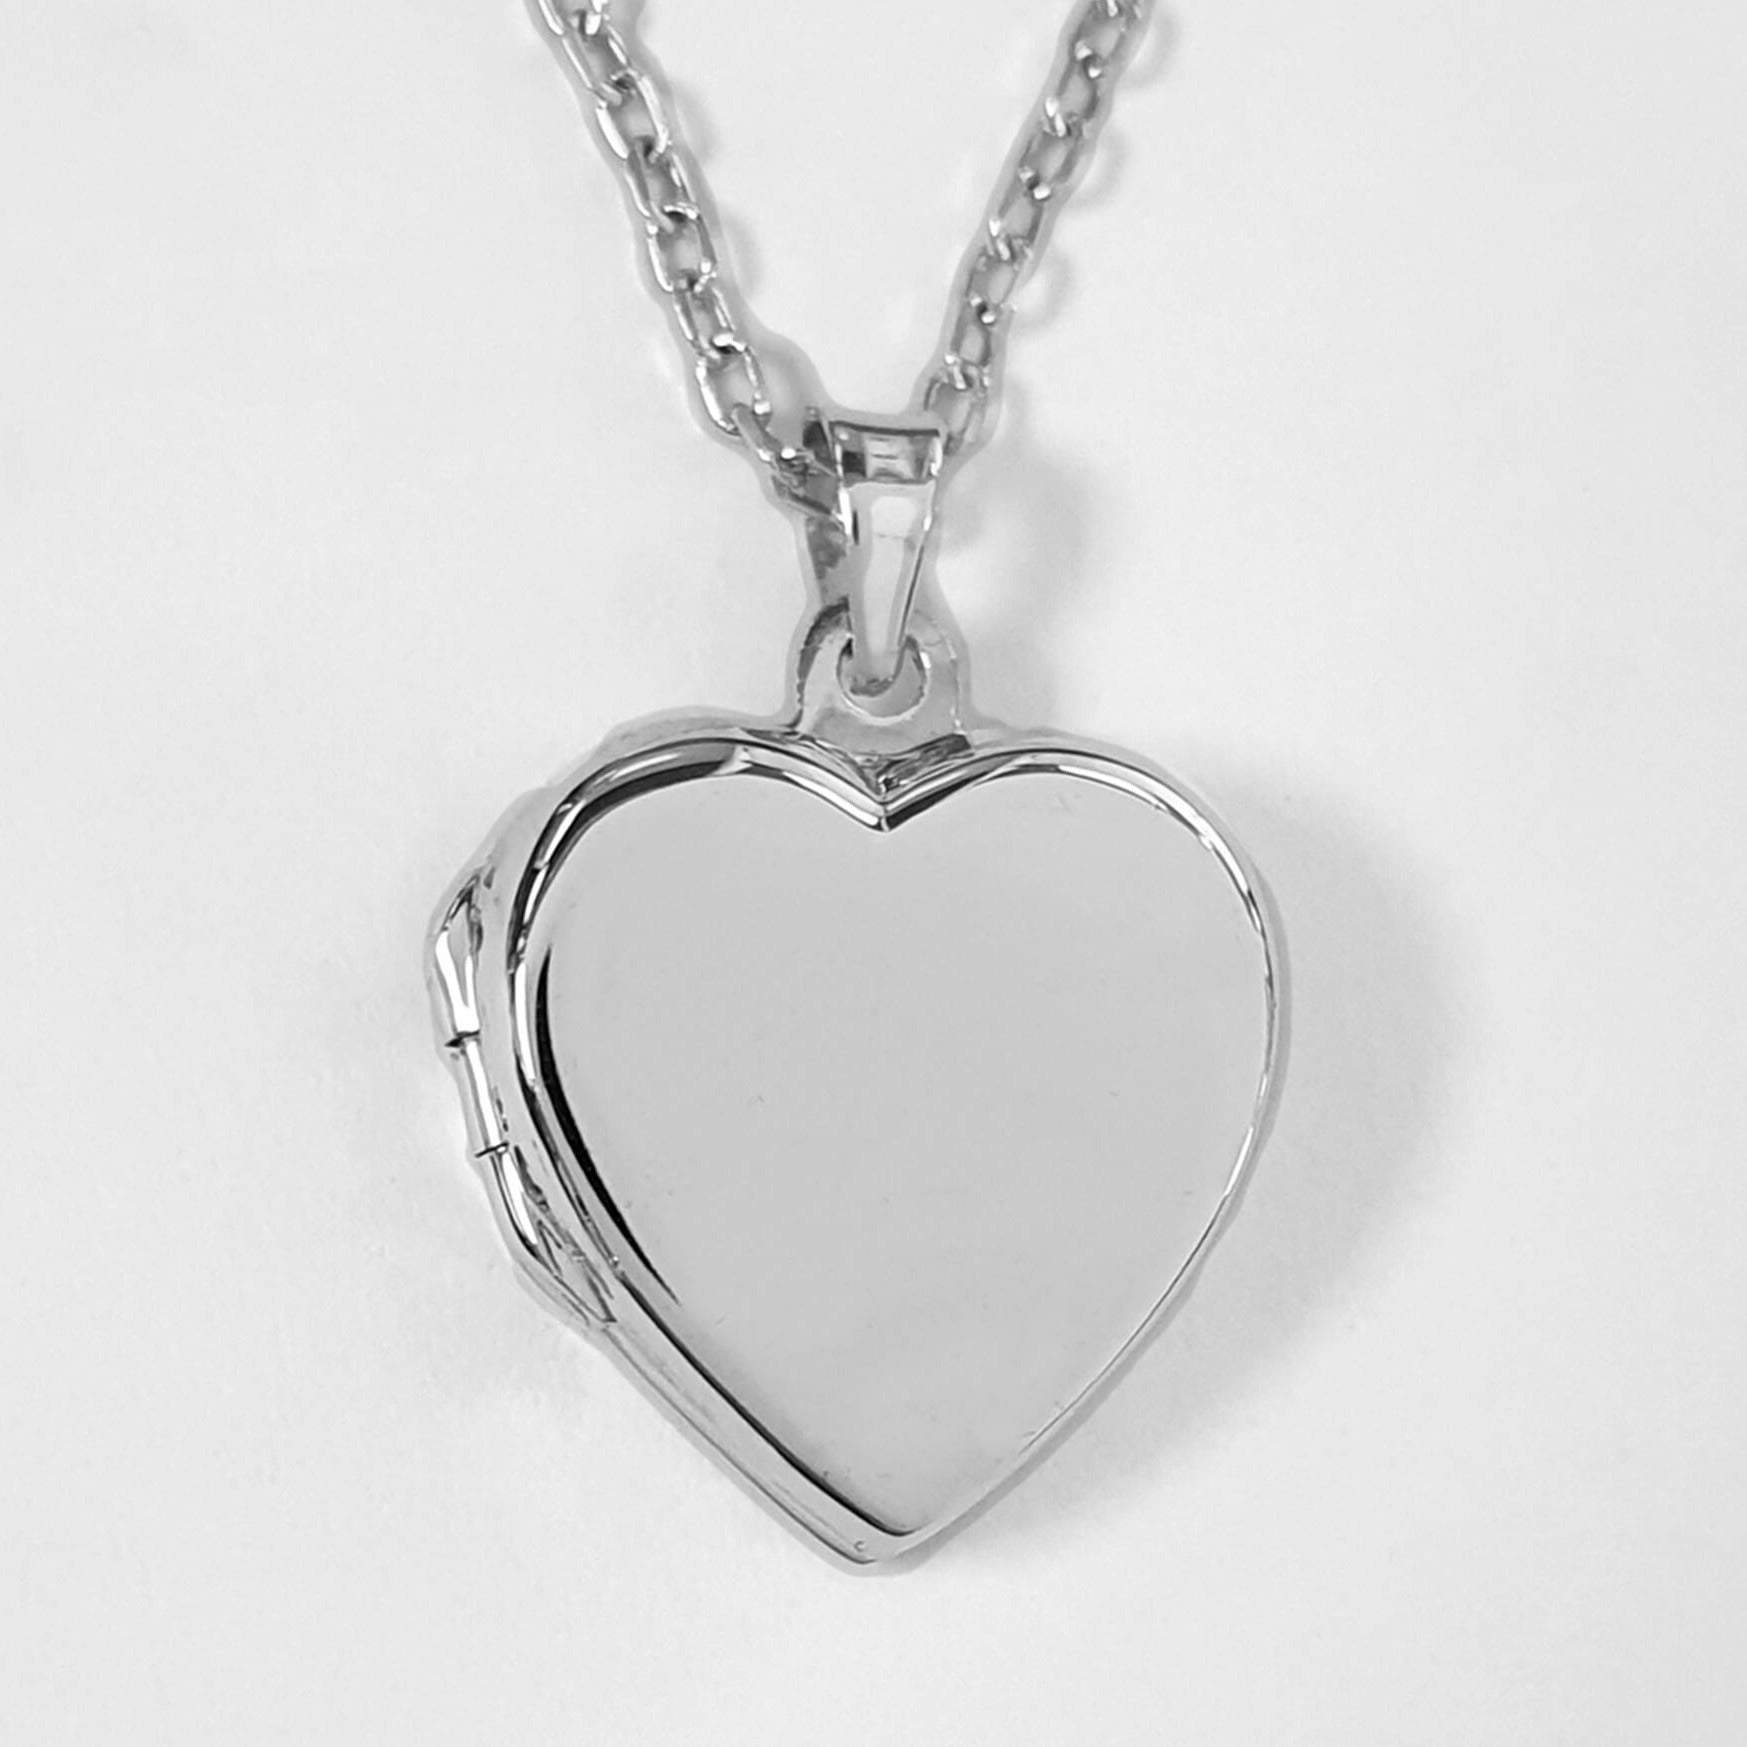 Silver heart locket